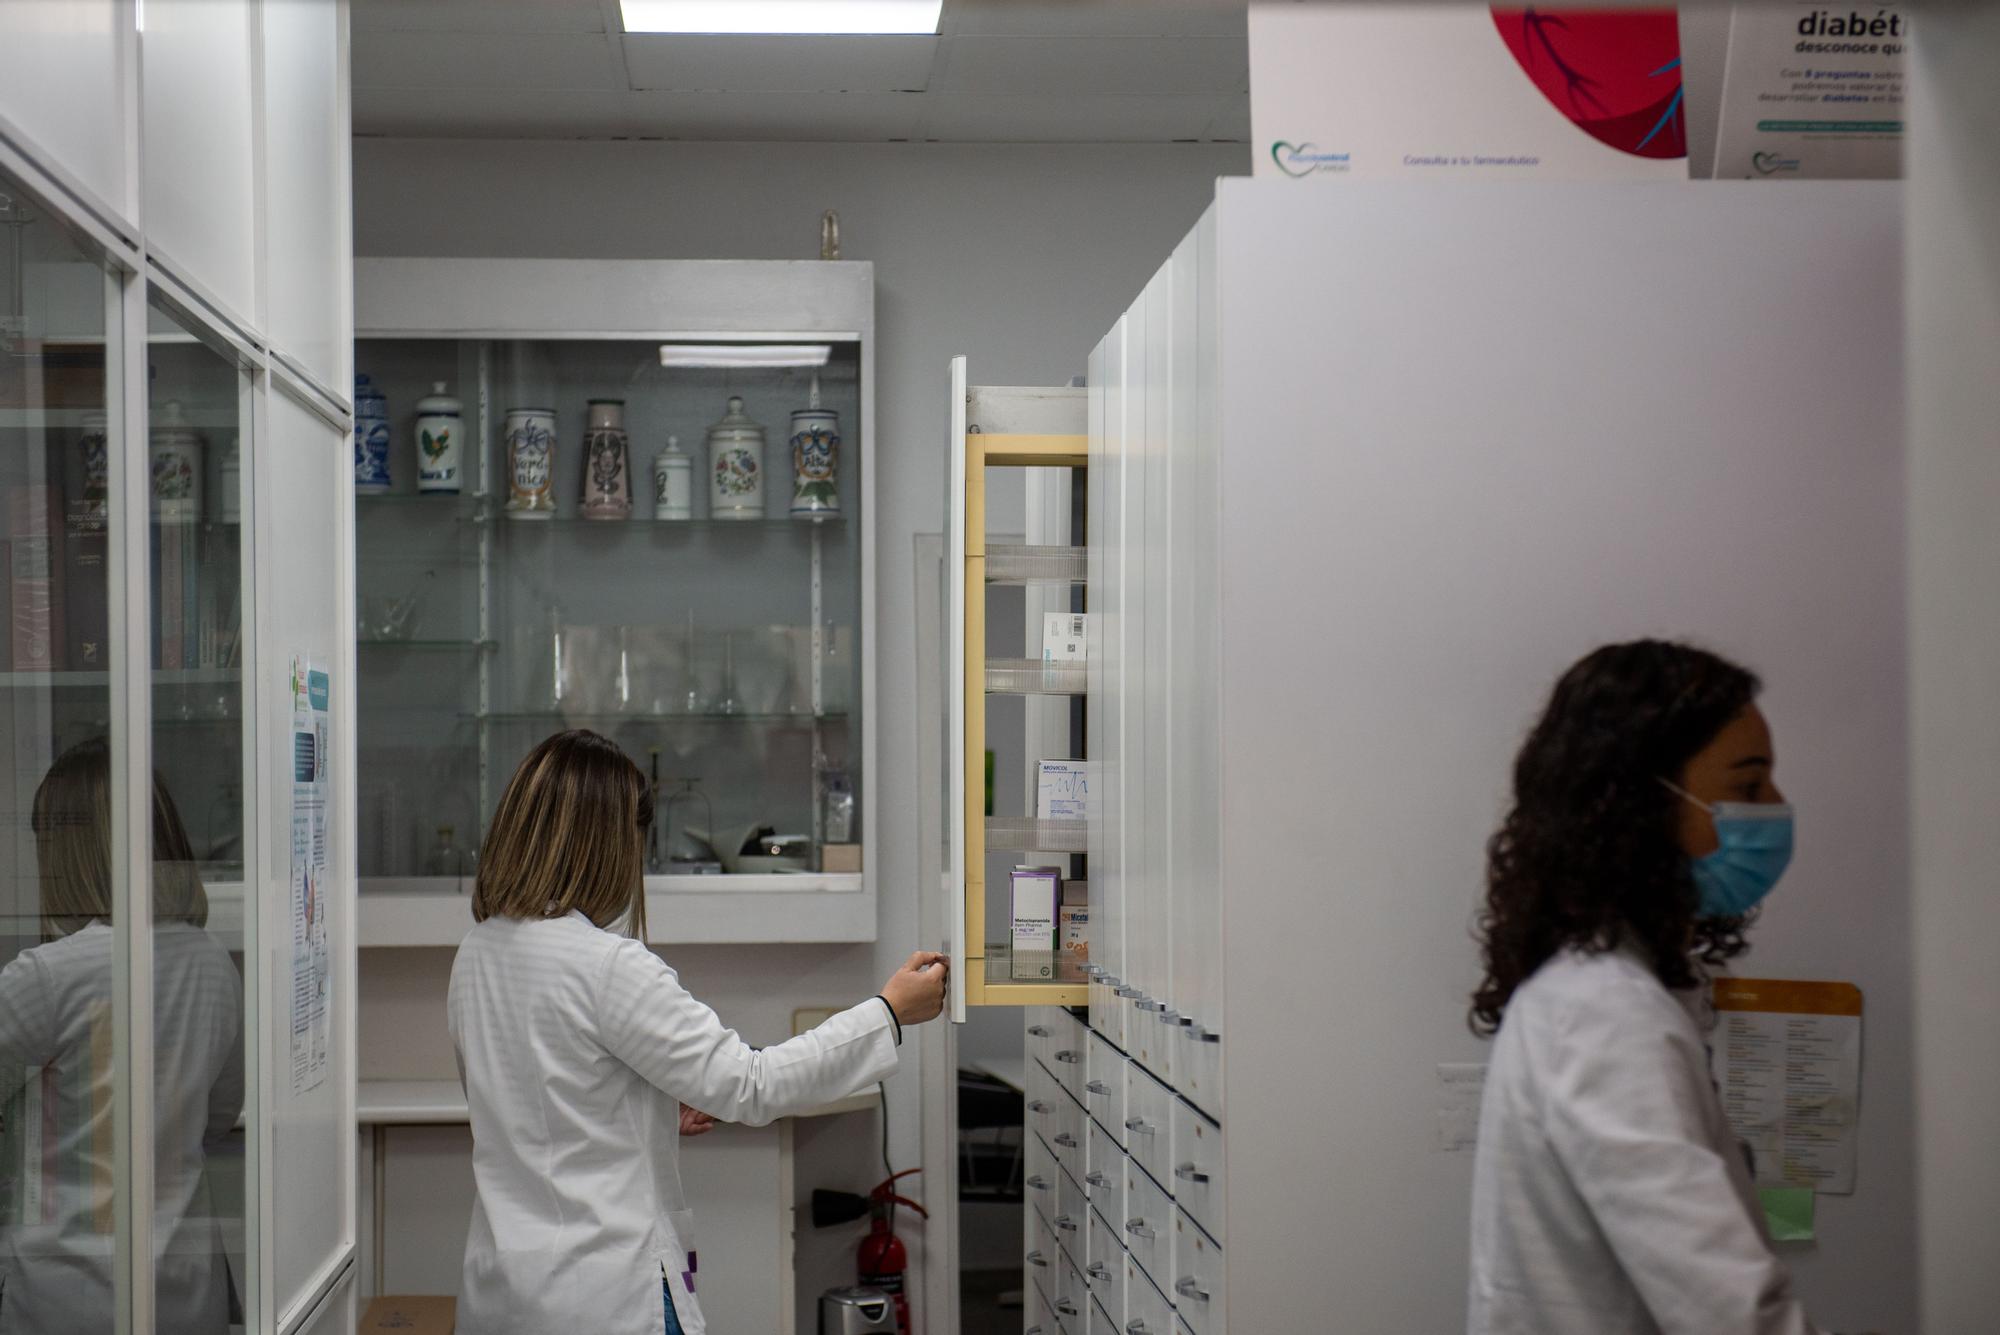 Dosis a la carta en A Coruña para medicarse mejor